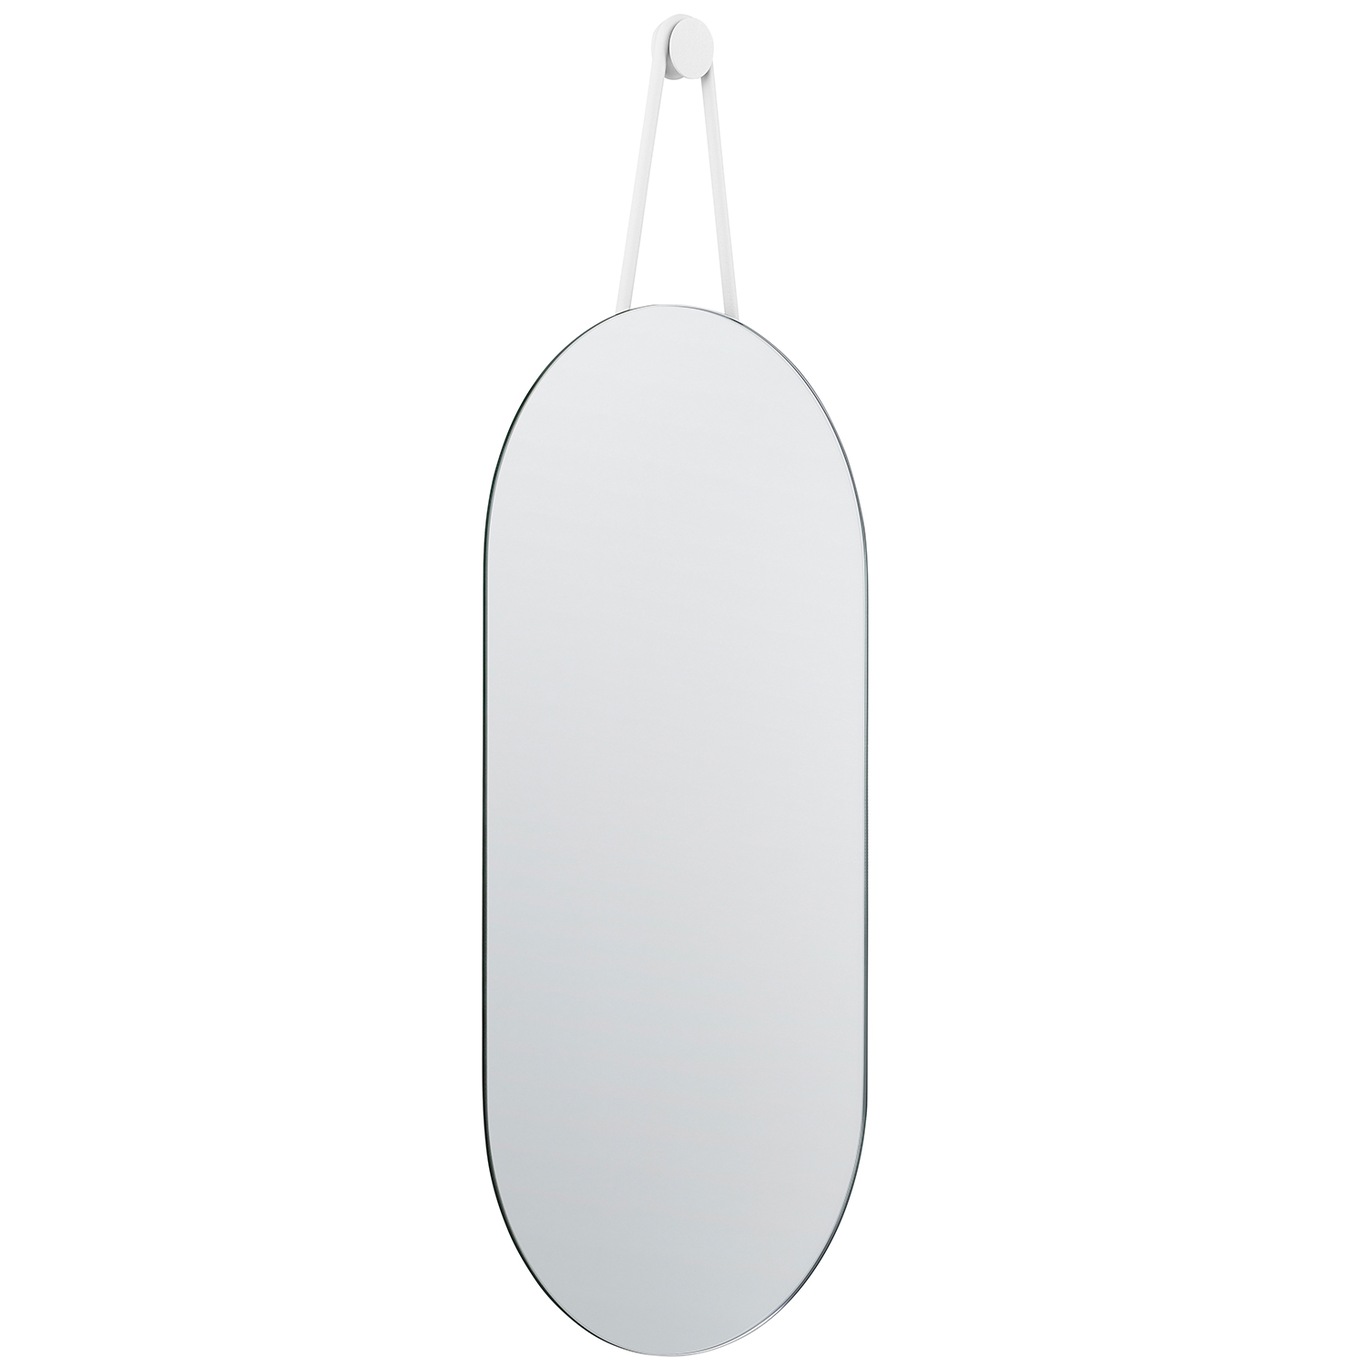 A-Wall Mirror, White 30x60 cm